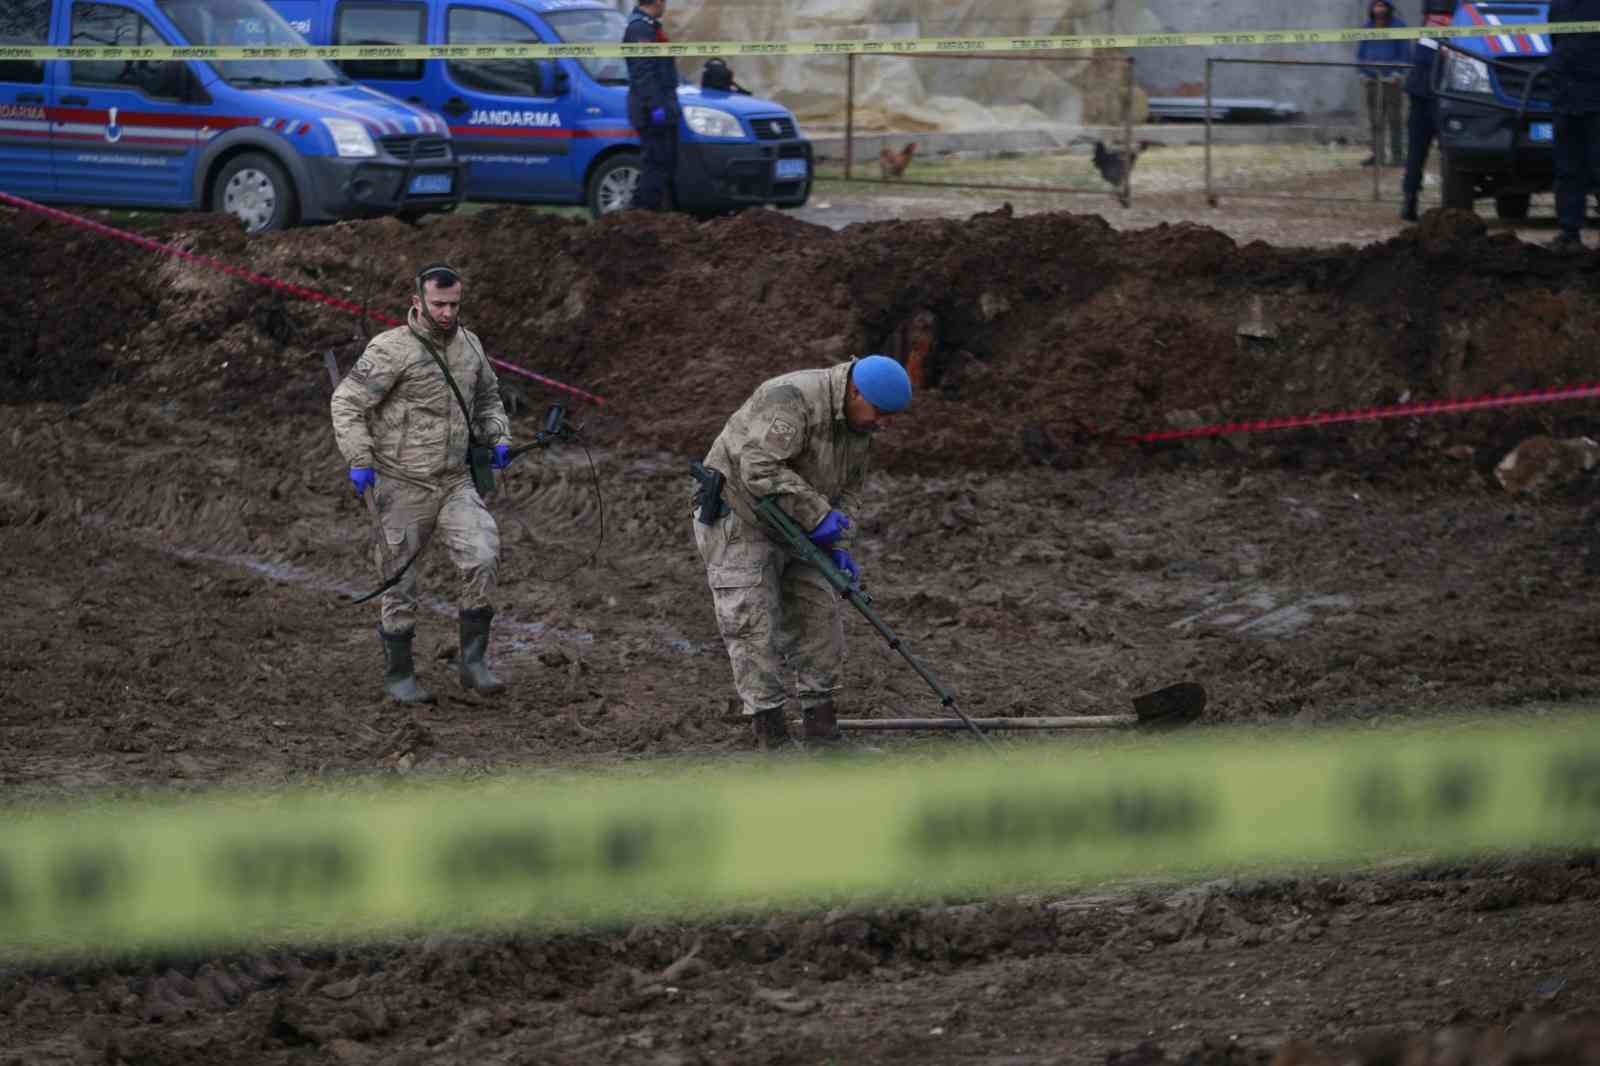 Jandarma dedektörle cinayetin işlendiği suç aletini arıyor